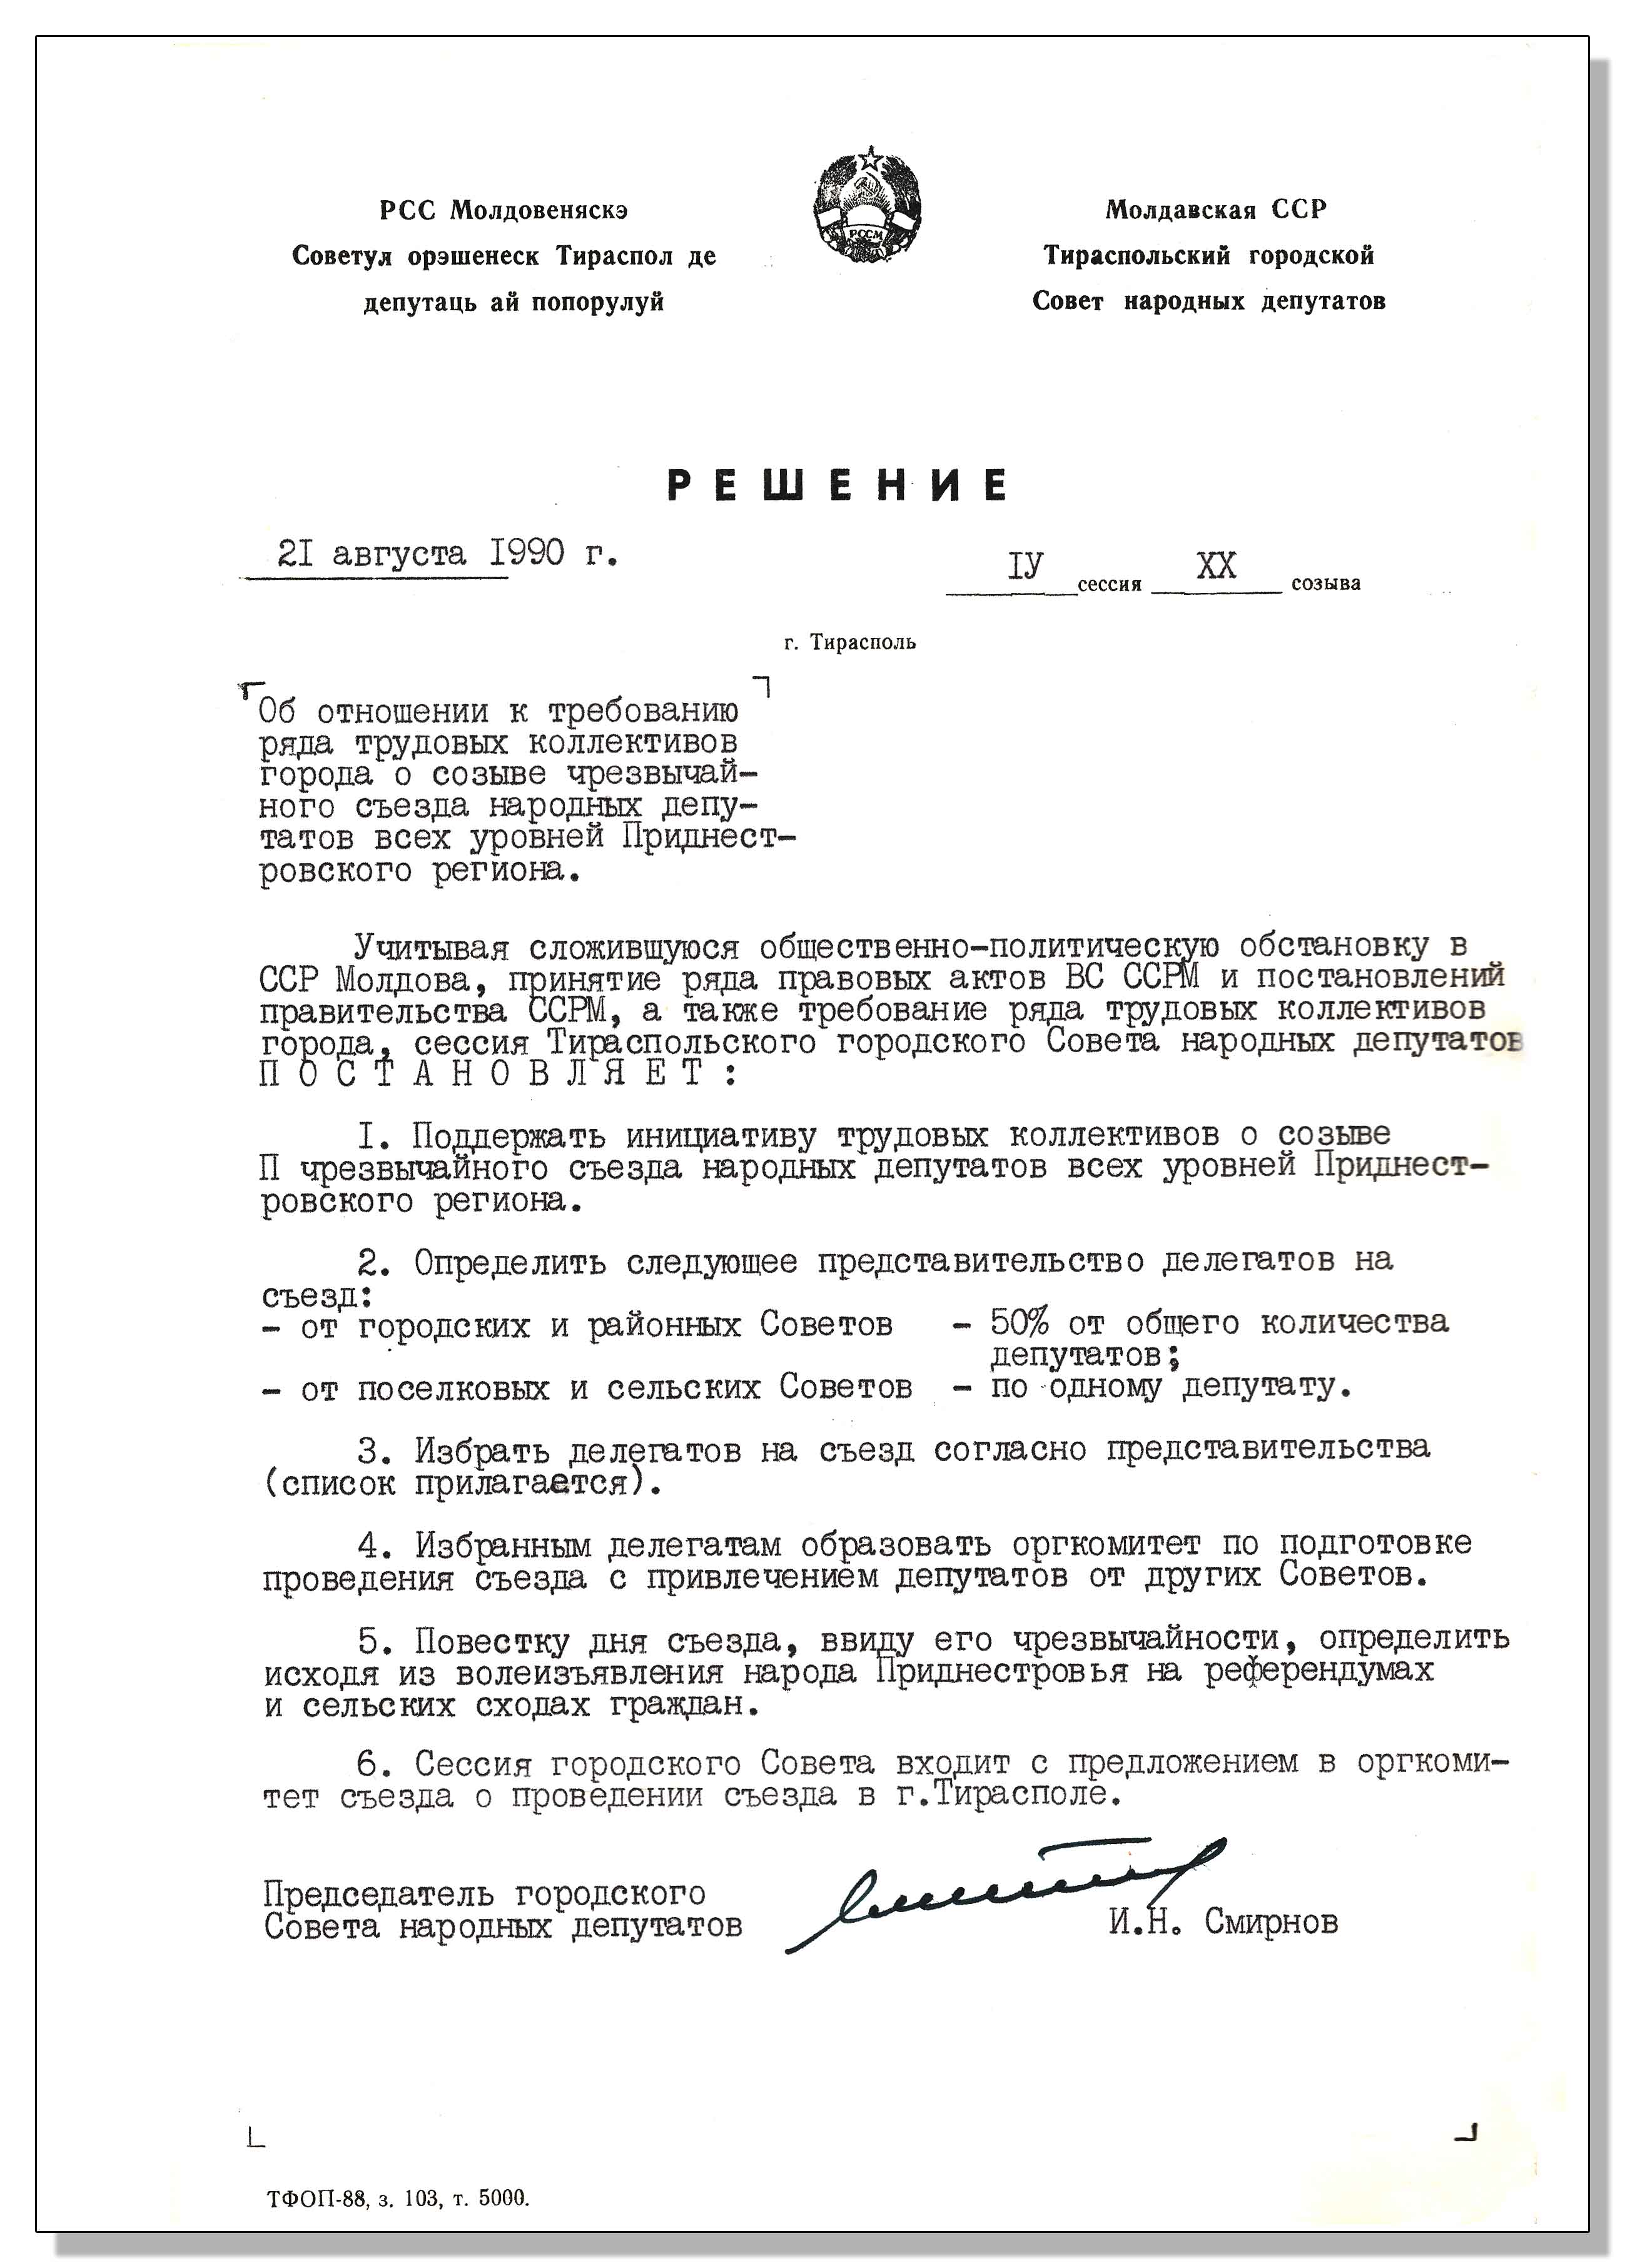 Государственная служба управления документацией и архивами Приднестровской Молдавской Республики День Республики Архивный документ месяца  